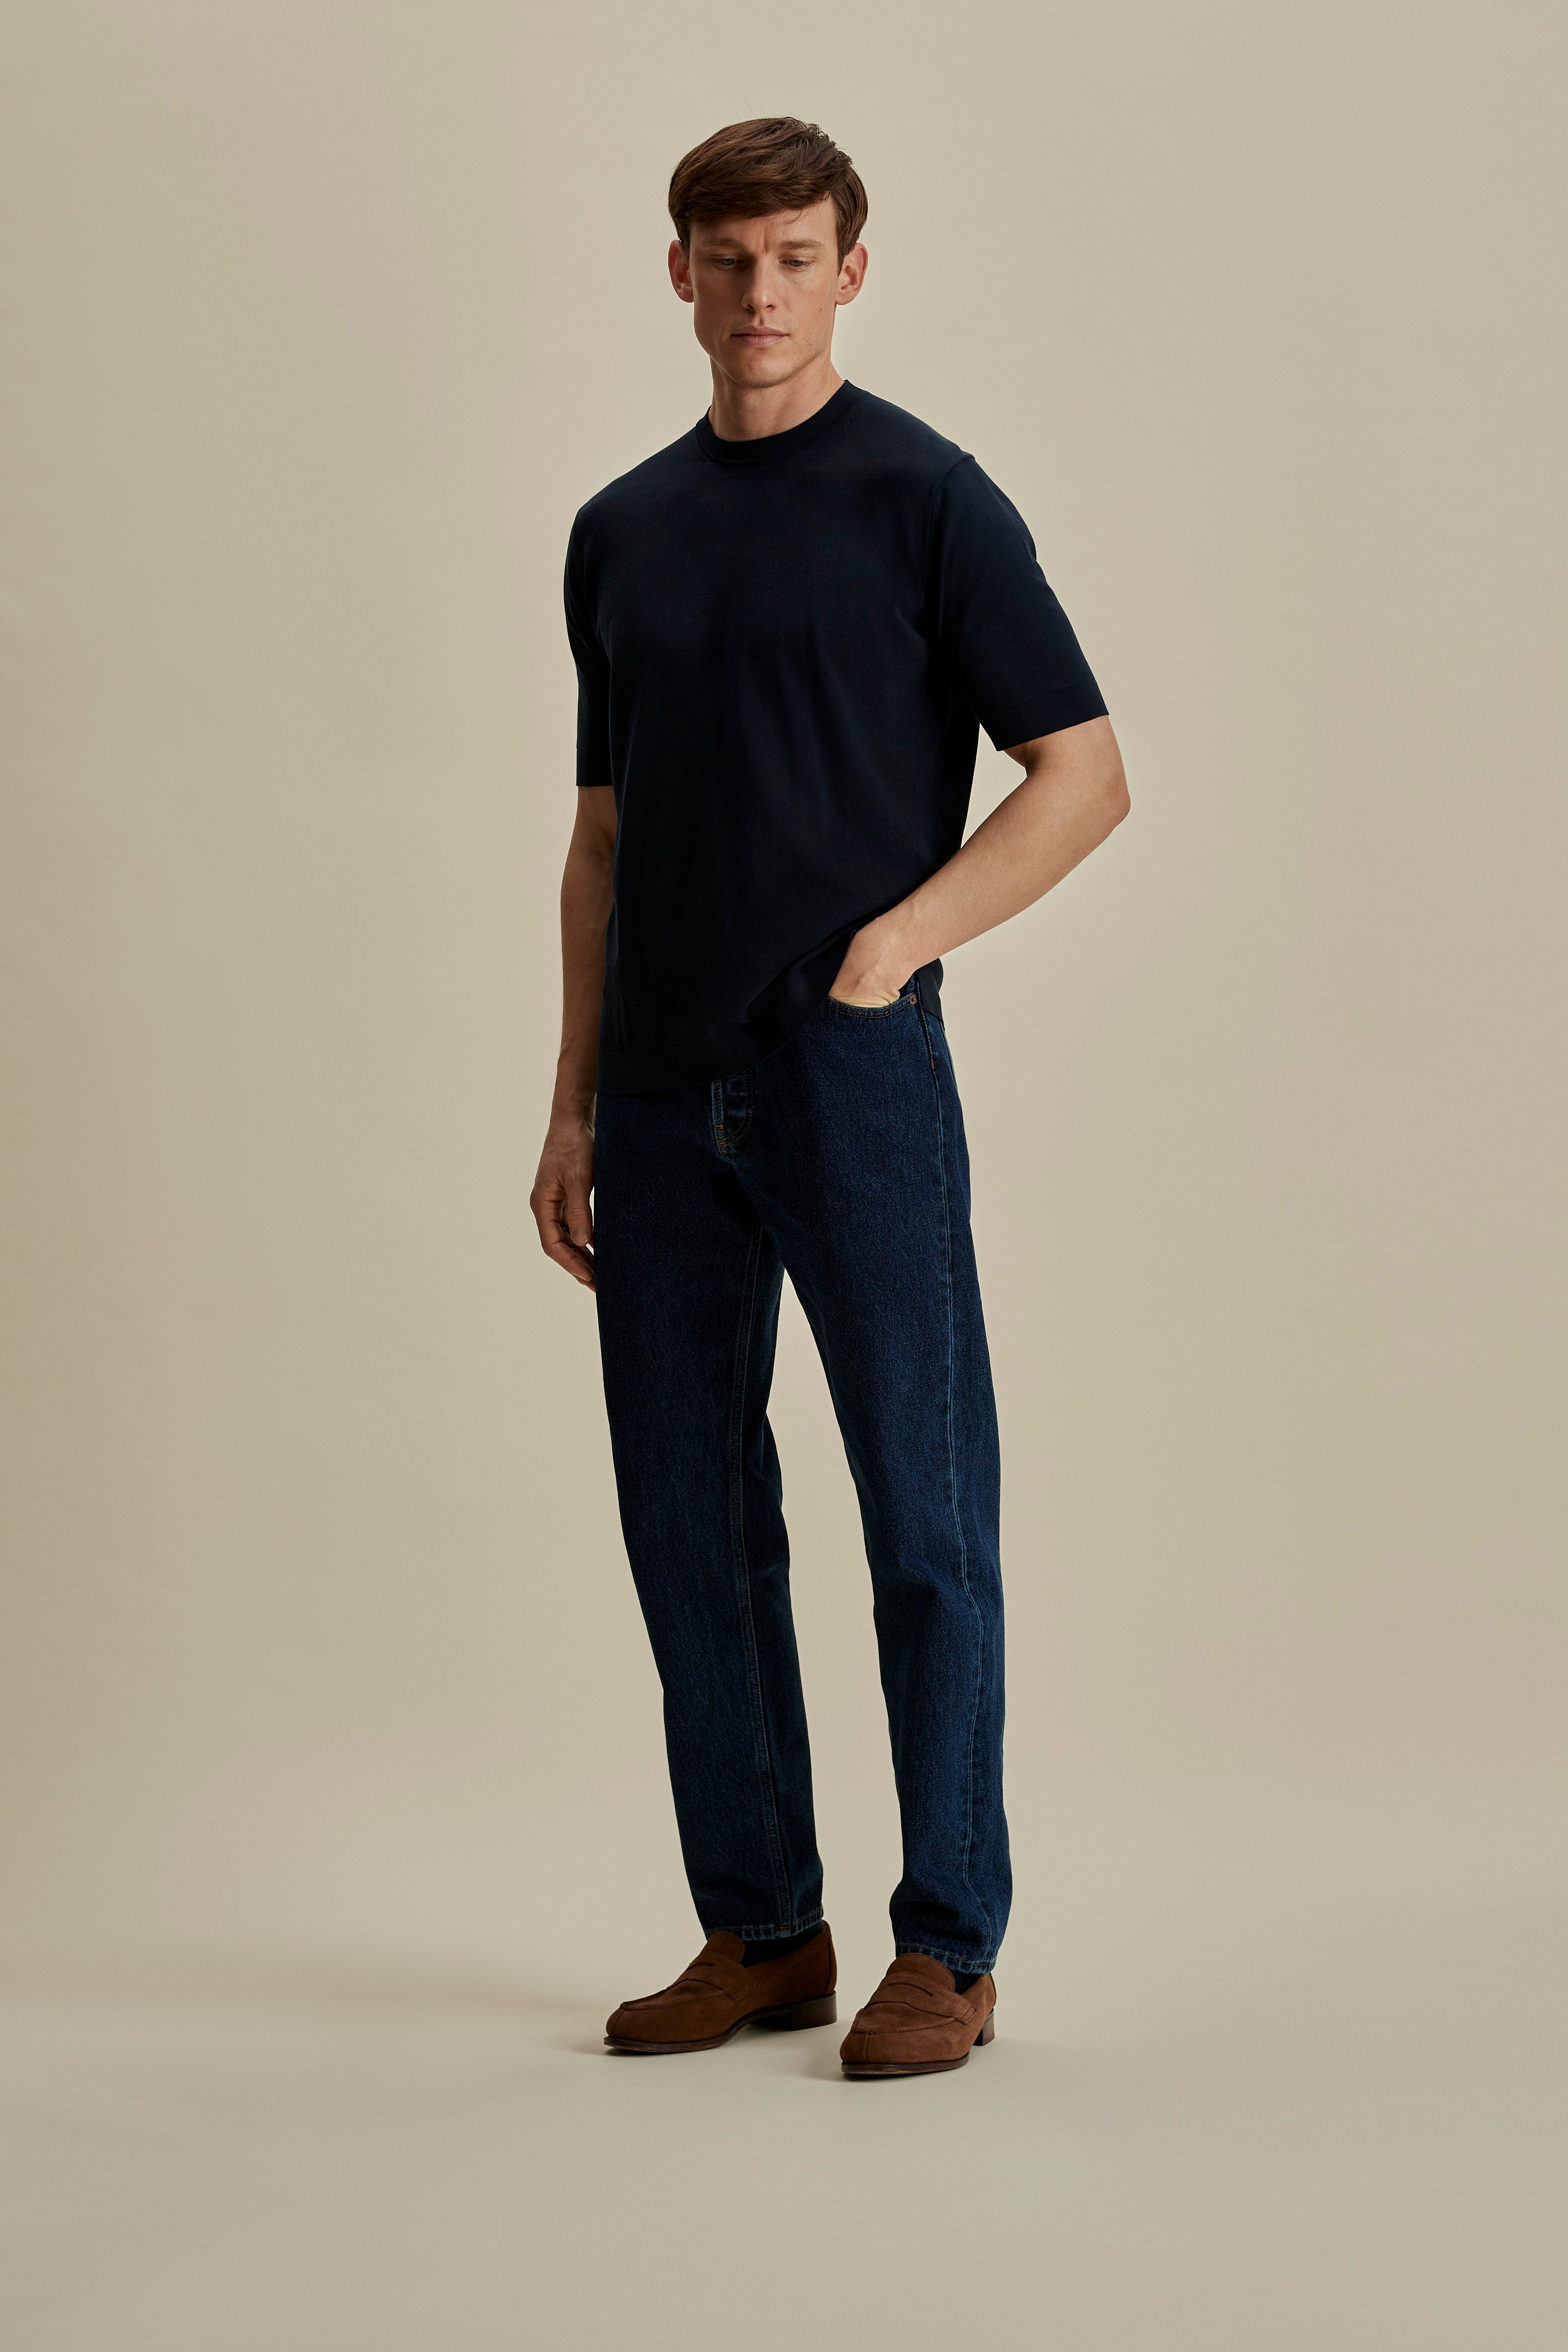 Crepe Cotton T-Shirt Navy Full Length Model Image